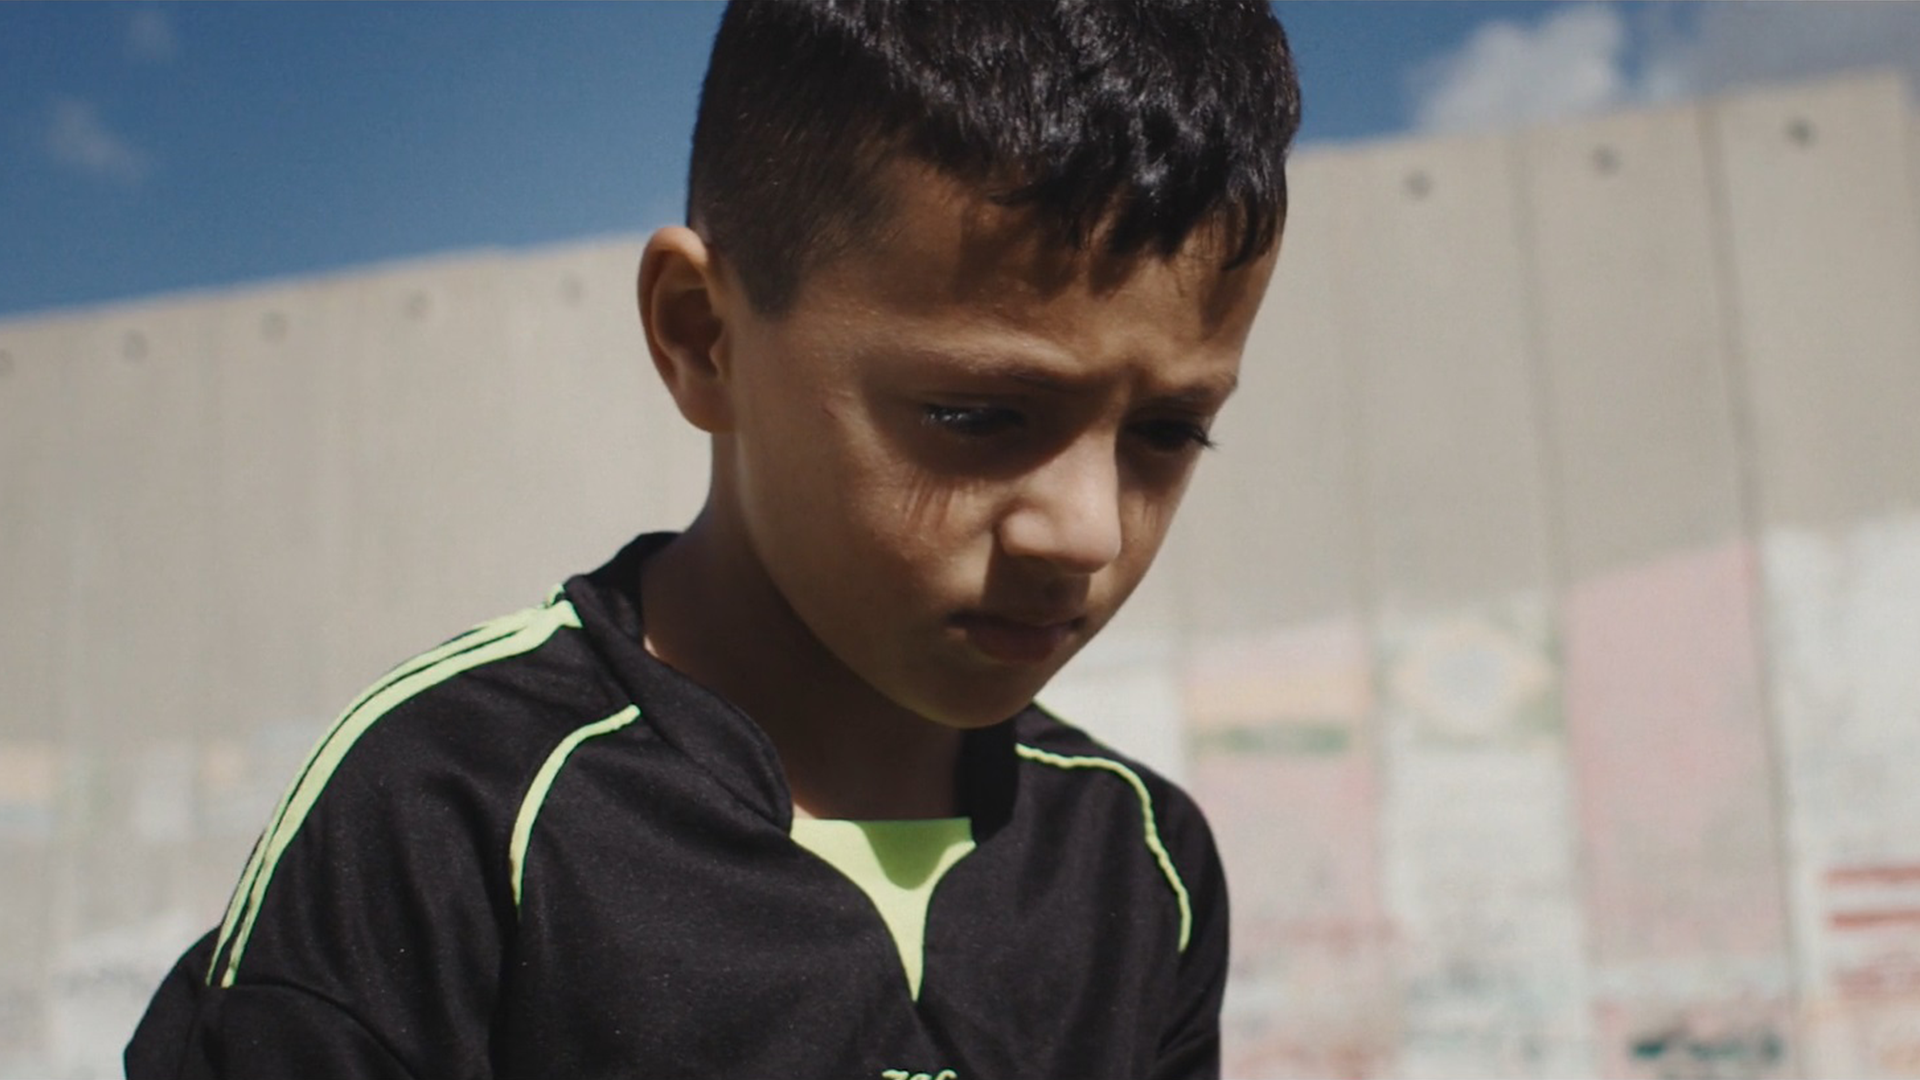 Shahid, créixer o morir a Palestina